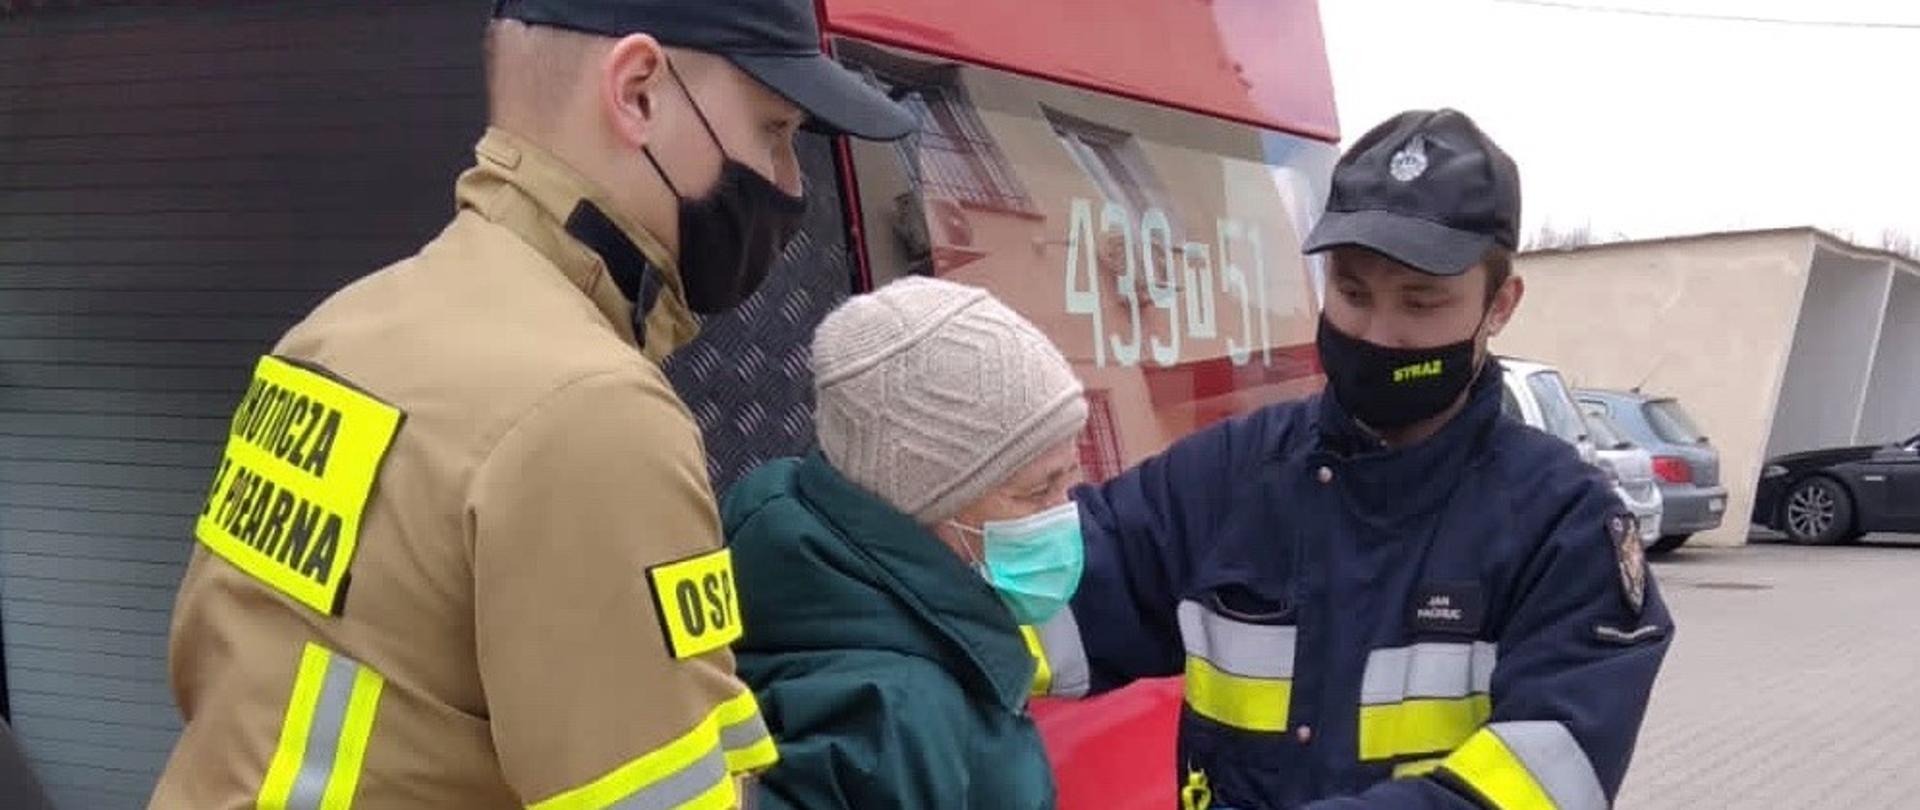 Strażacy OSP Ruda Maleniecka pomagają wysiąść z samochodu strażackiego starszej pani